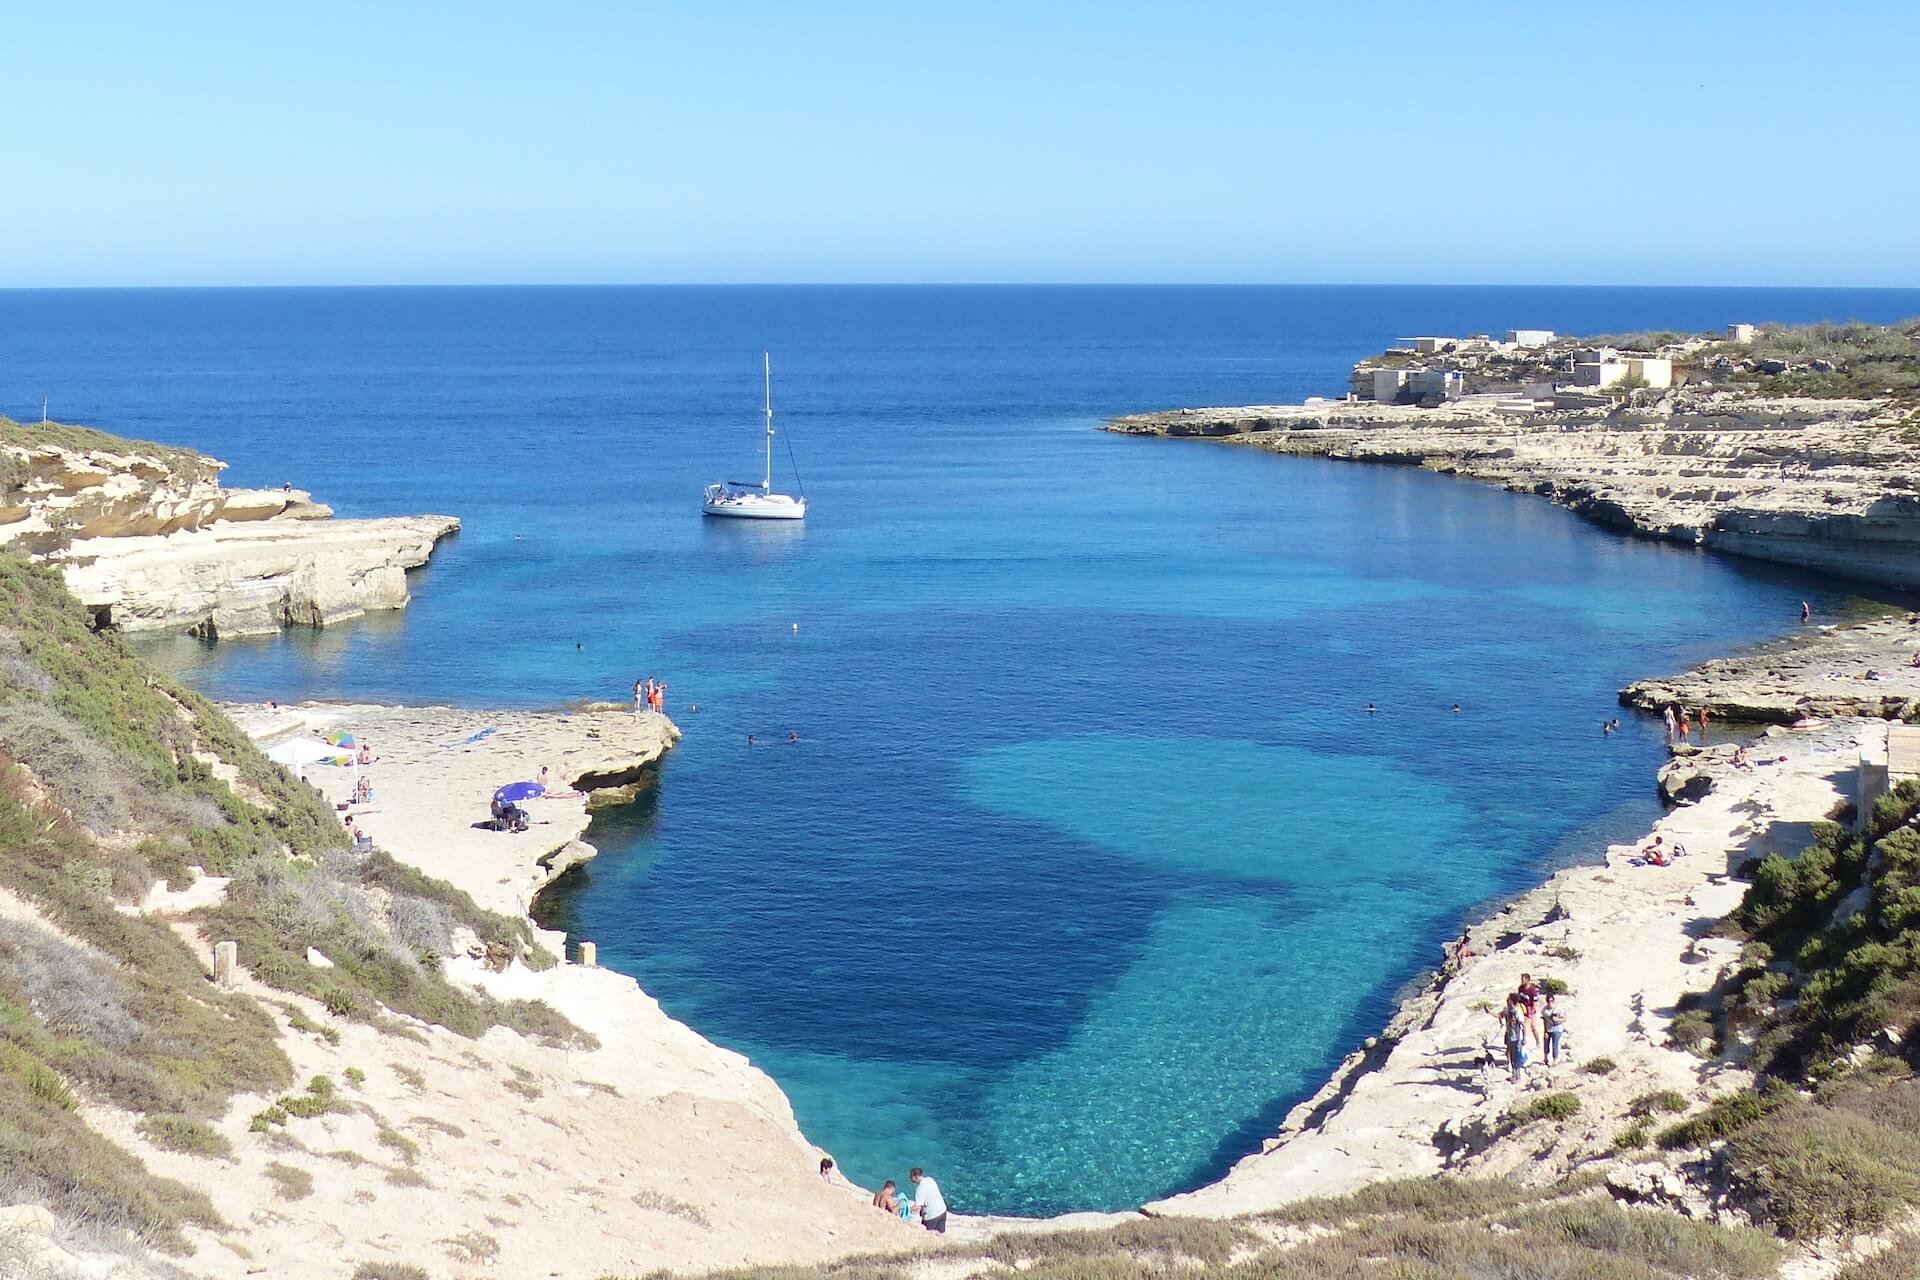 Barco na baía de Kalanka em Malta